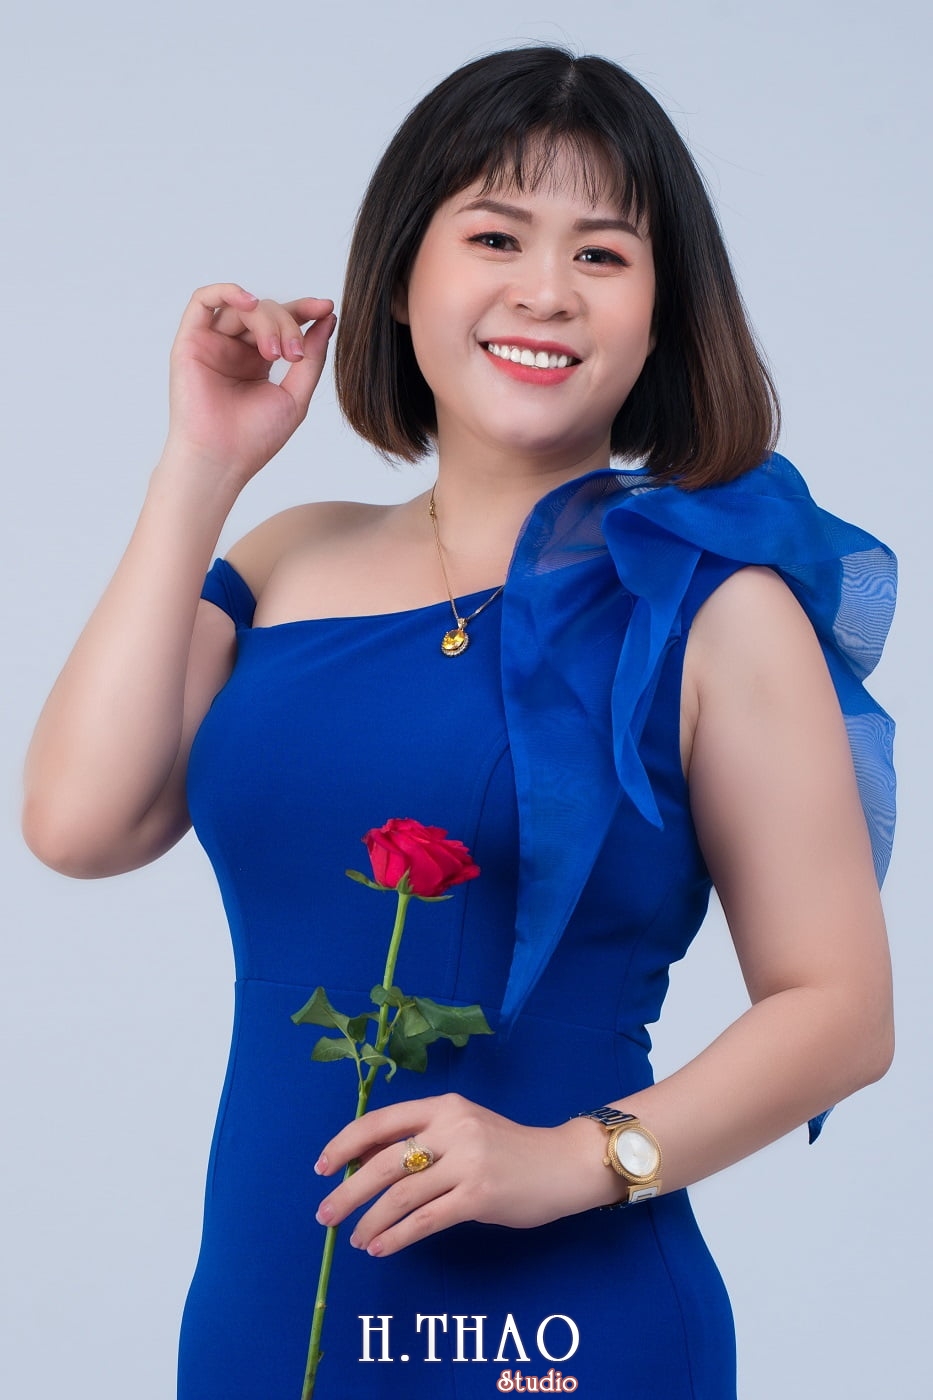 Chi Hoa 12 - Album ảnh profile cá nhân chị Hòa đẹp – HThao Studio